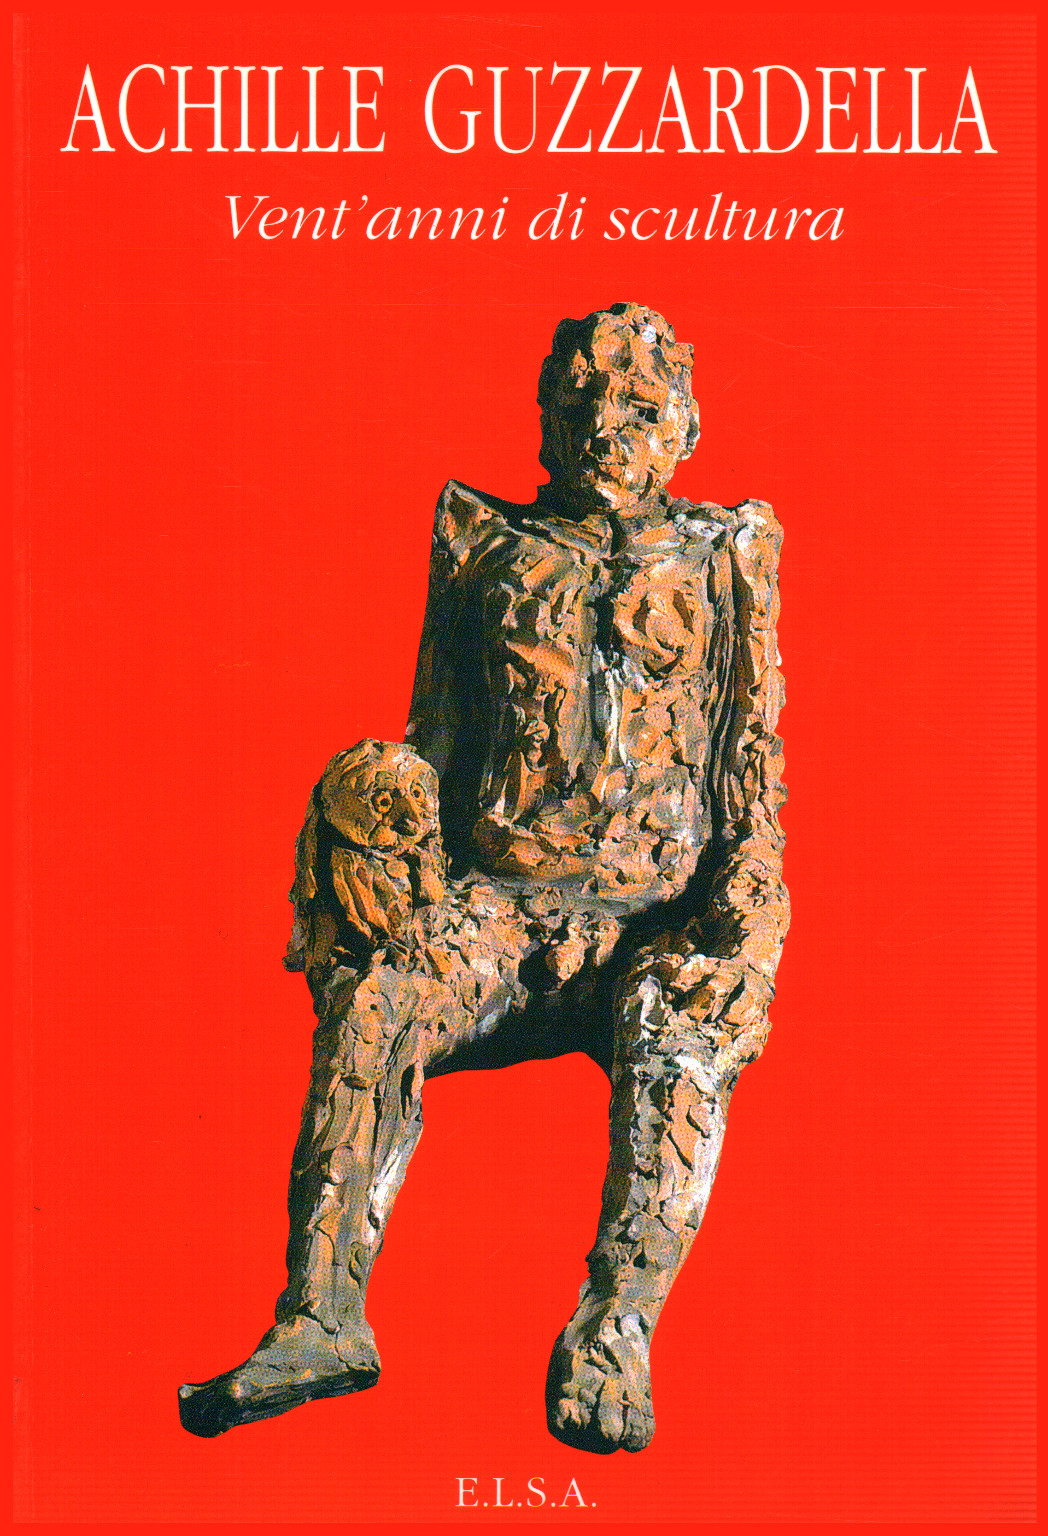 Achille Guzzardella. Vingt ans de sculpture, s.un.